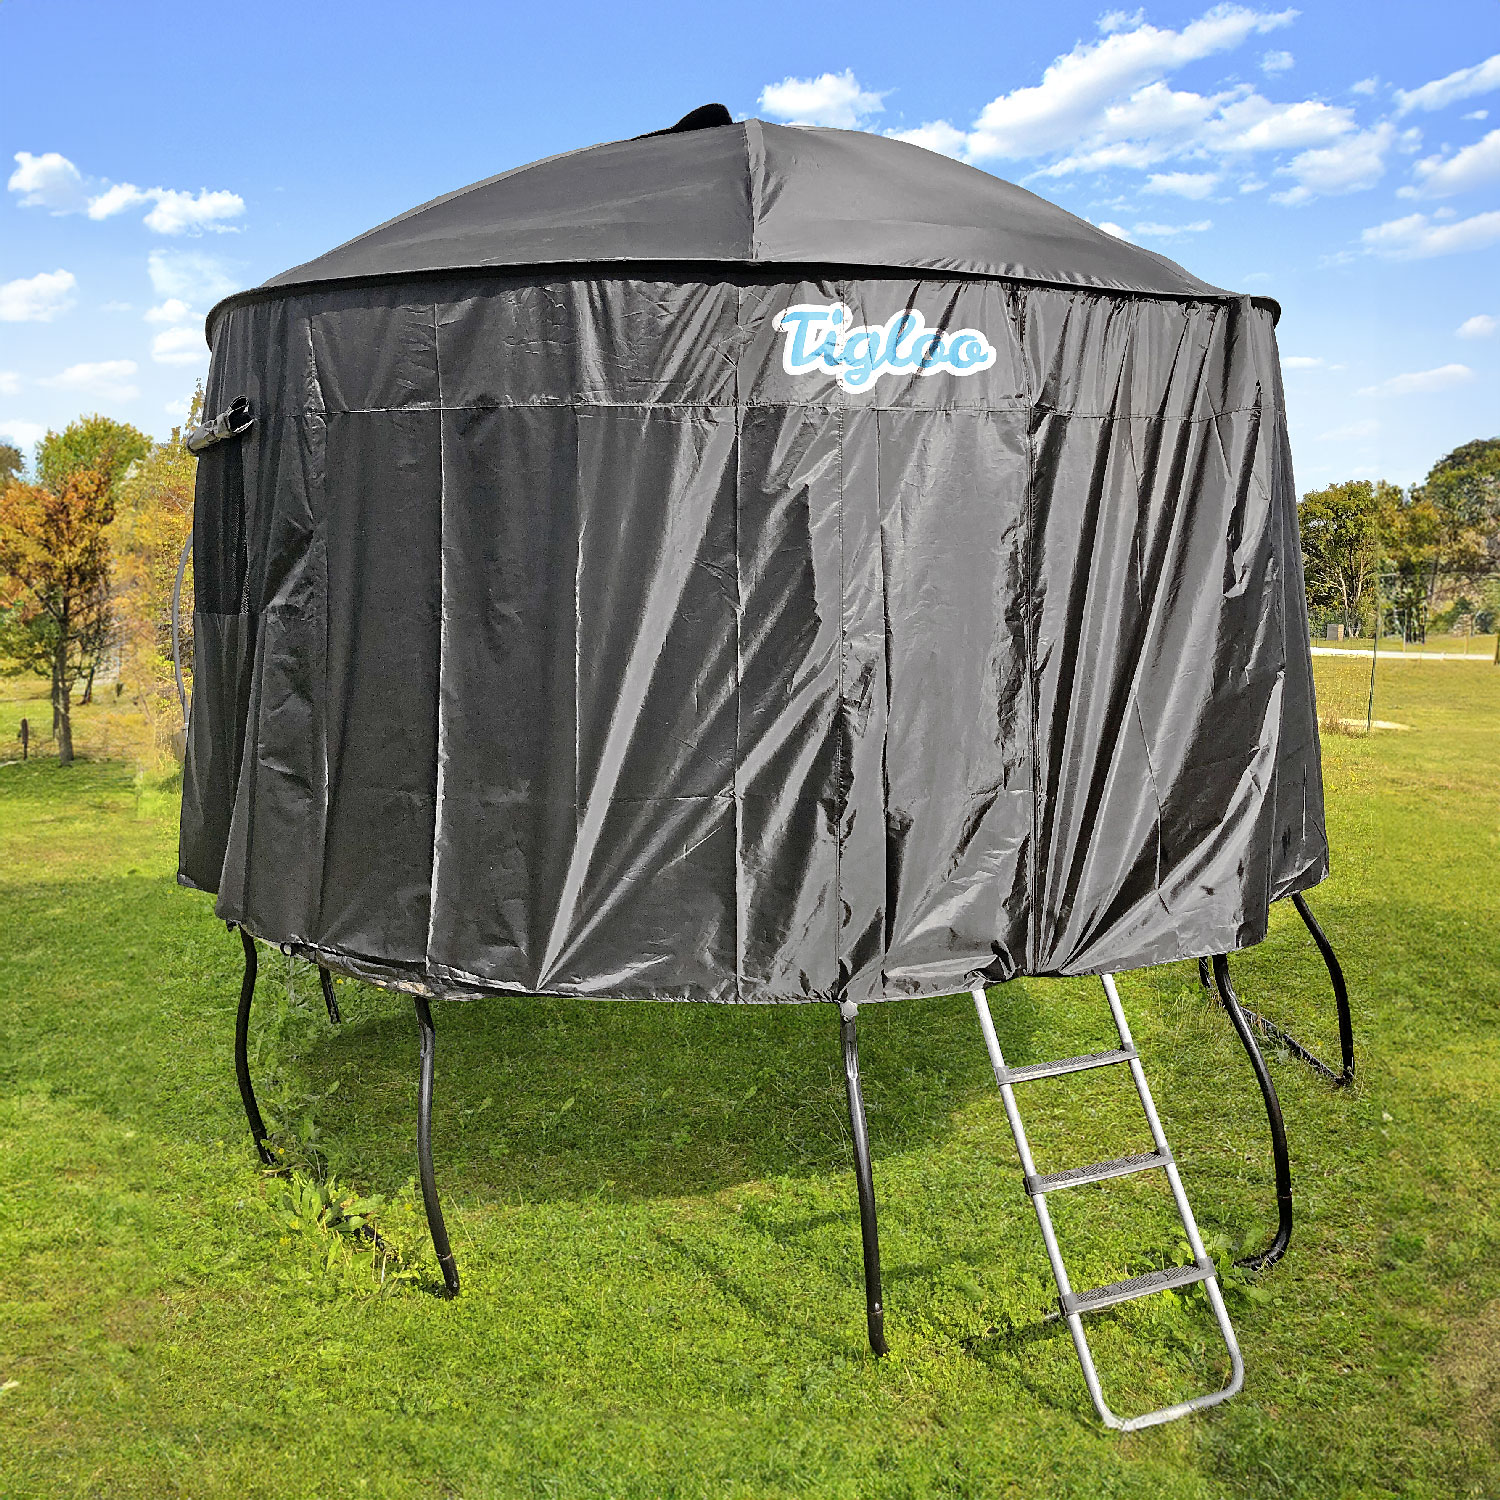 Filet de sécurité de protection pour trampoline d'extérieur Tapis de saut  anti-chute, taille : 10 pieds - 8 pôles - Diamètre 3,06 m